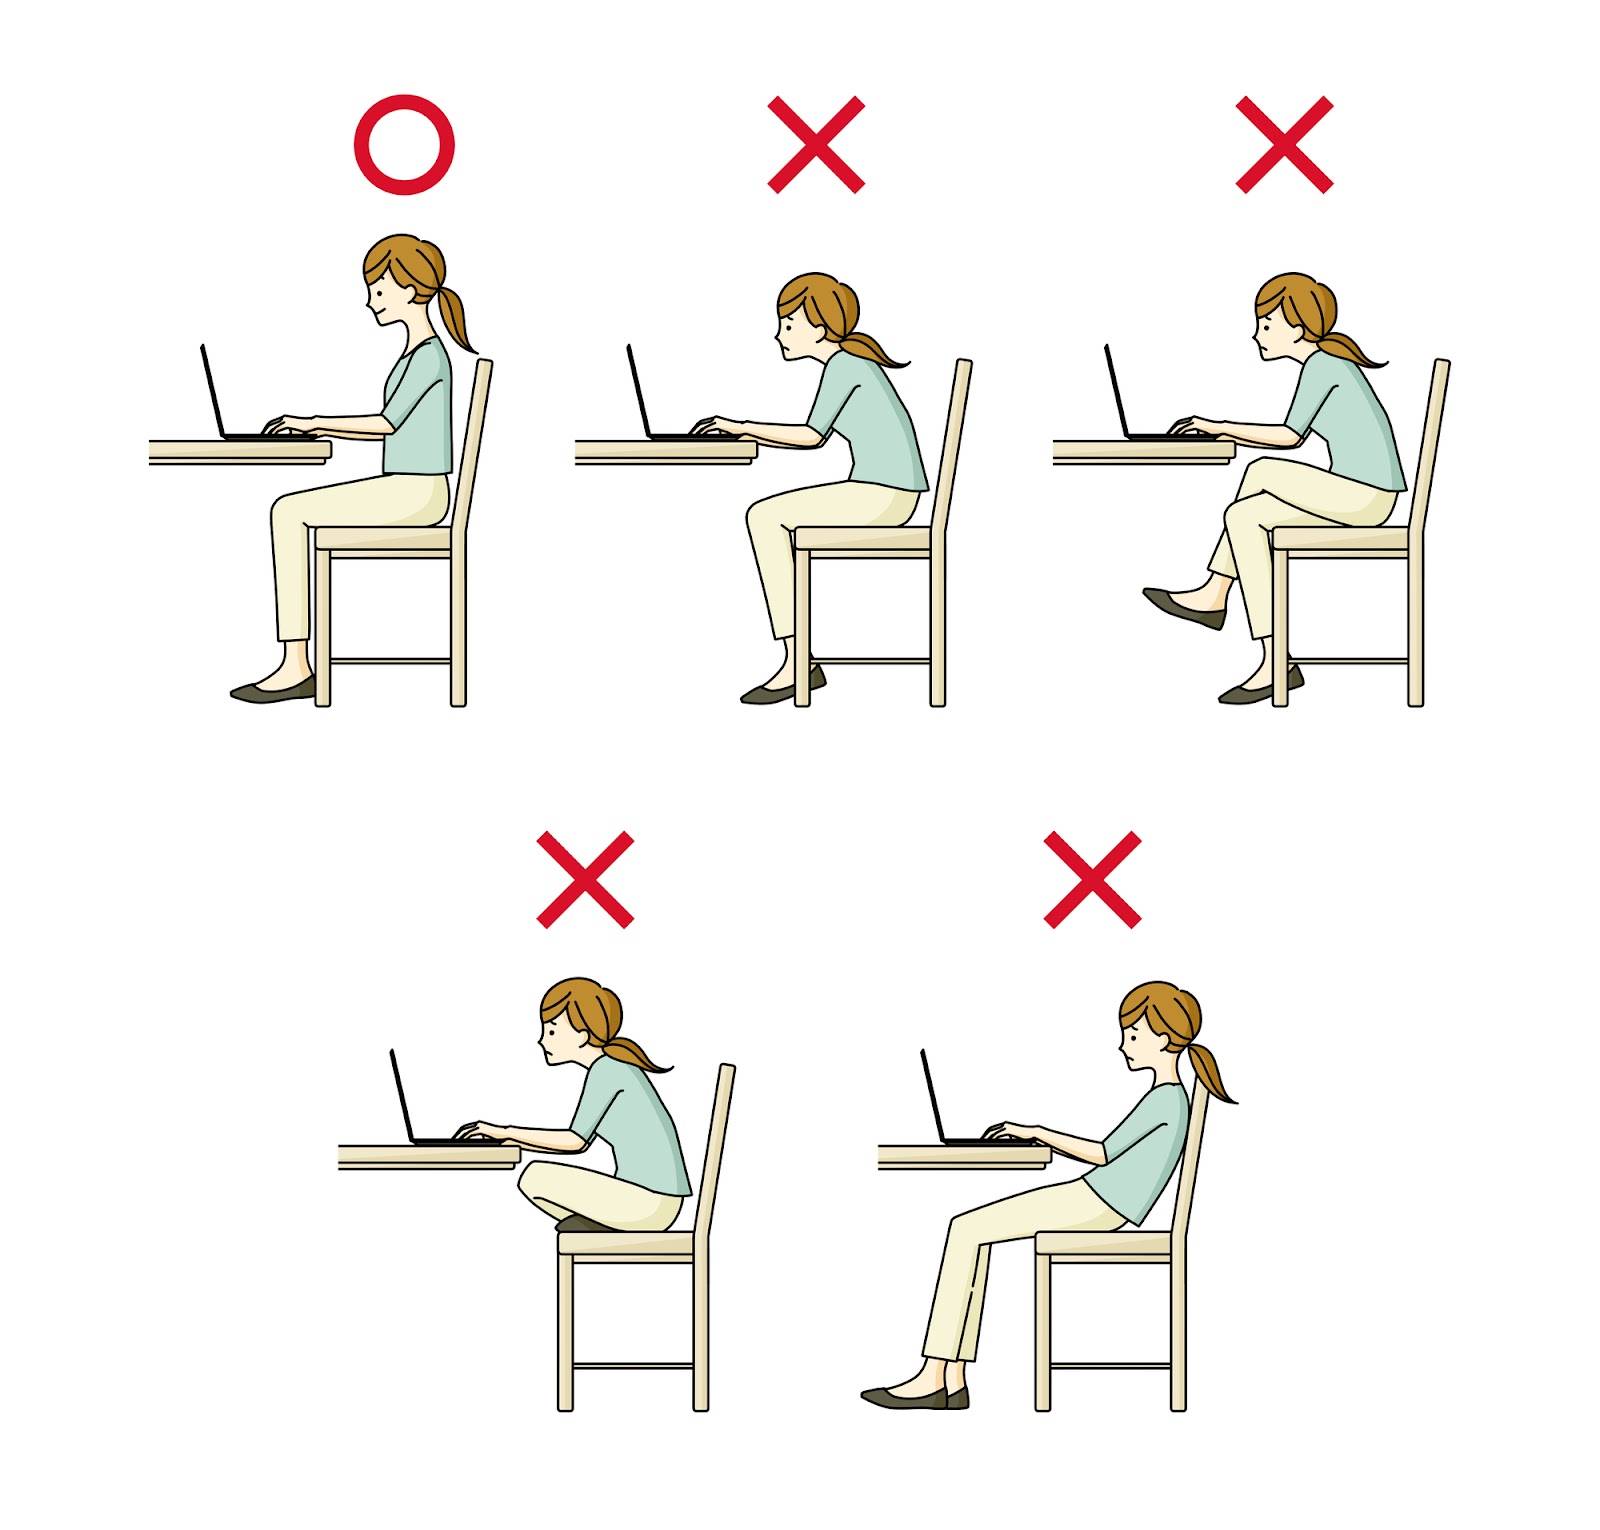 パソコン業務をする場合の正しい座り方3つ